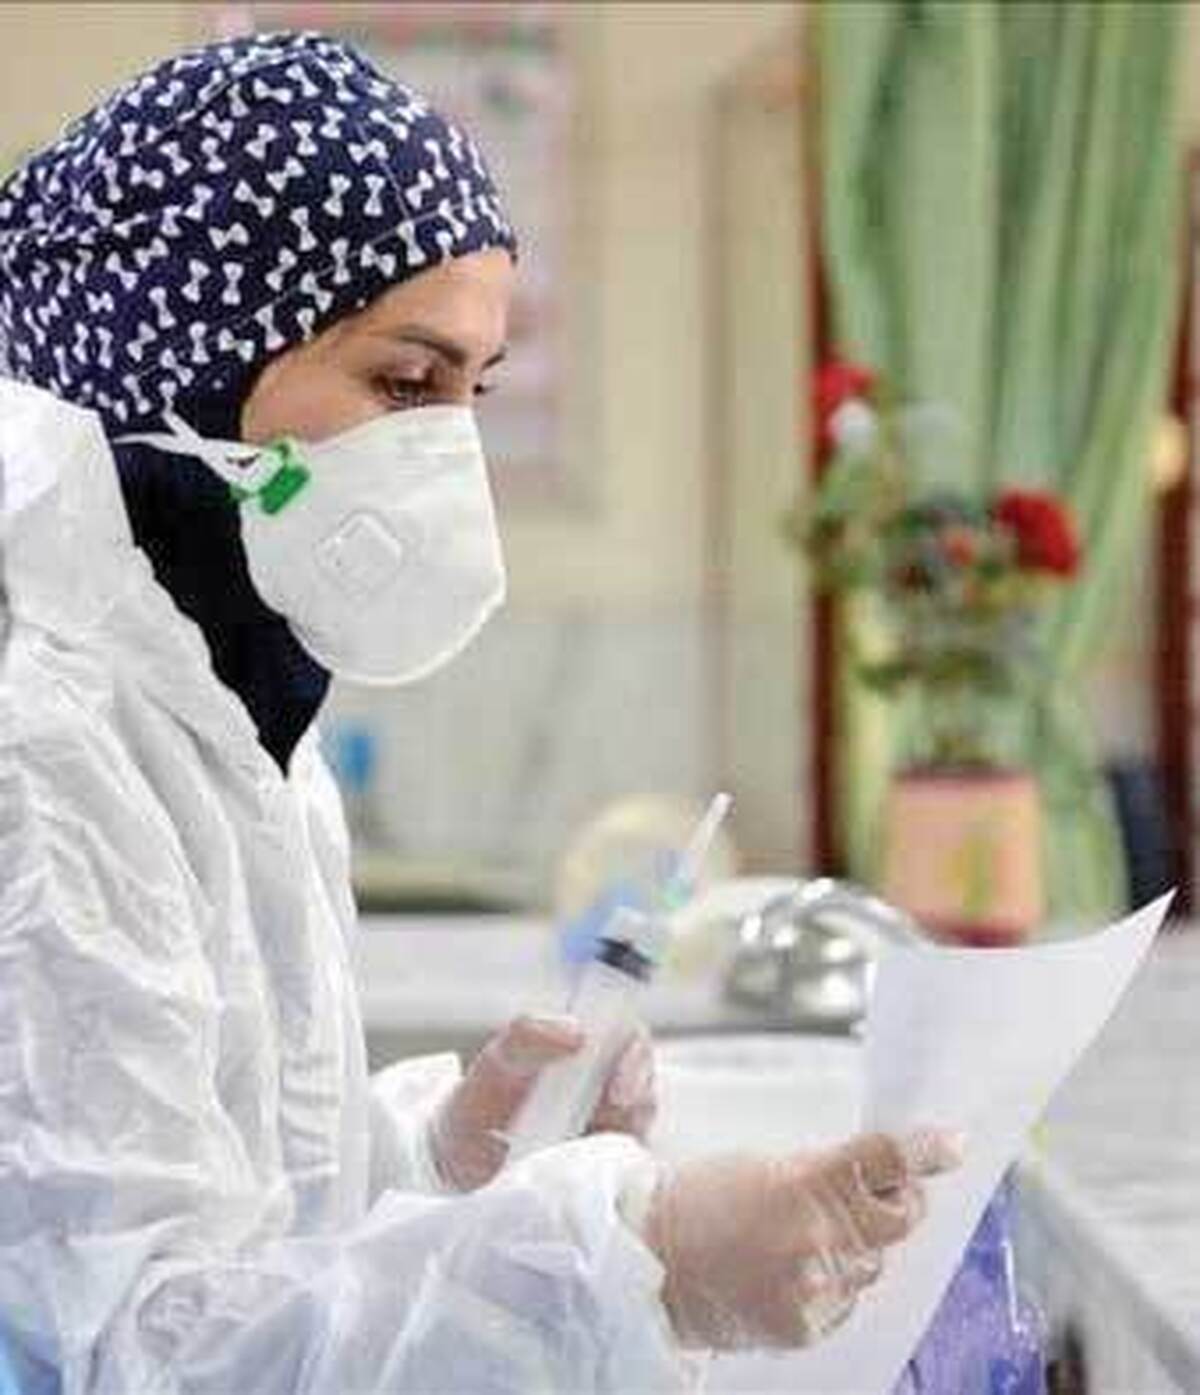 ۱۴ هزار نفر از گروه پرستاري در آزمون استخدامي وزارت بهداشت پذيرفته شدند